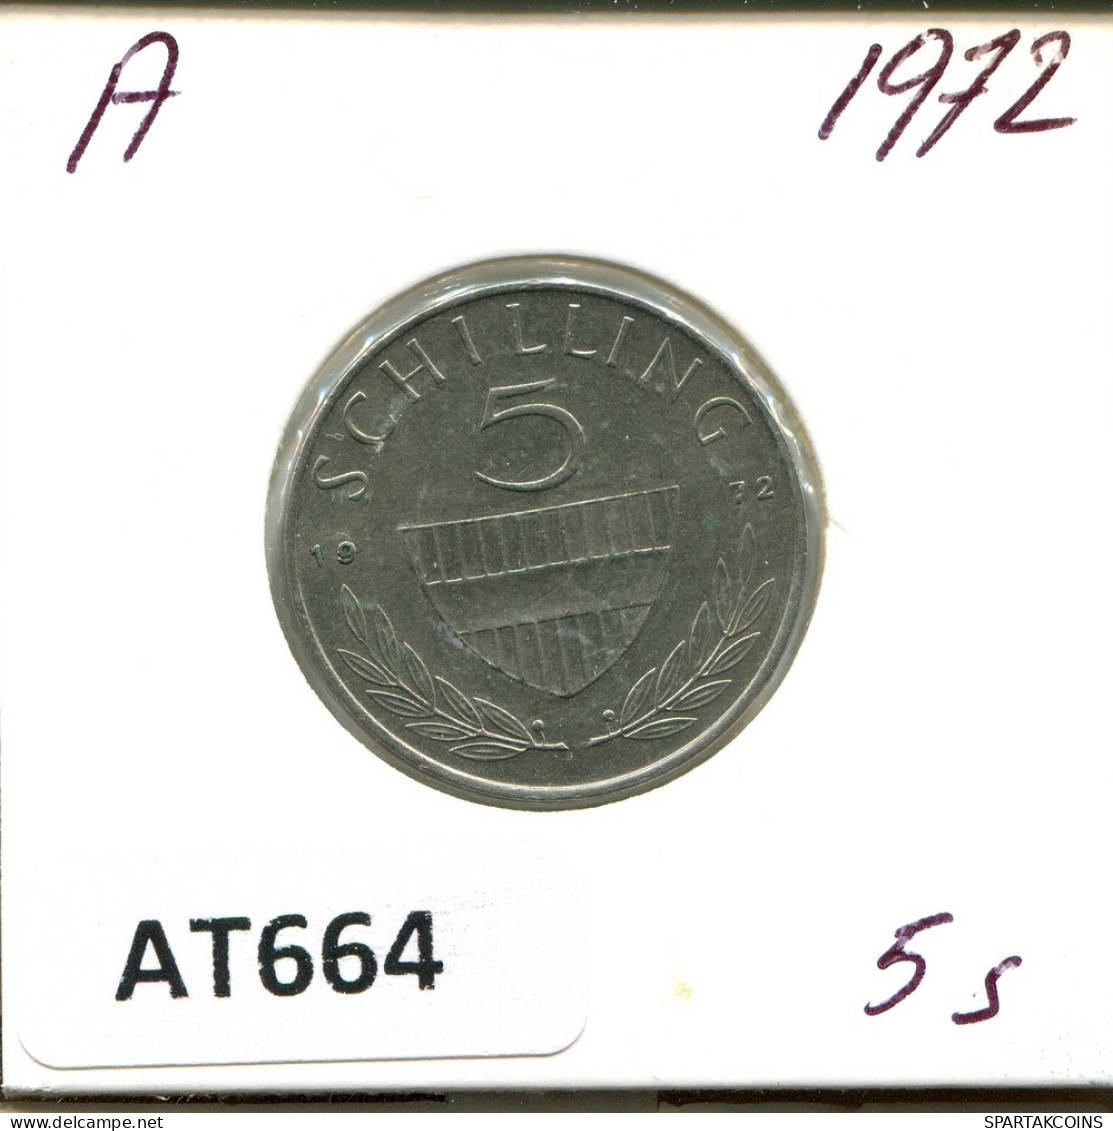 5 SCHILLING 1972 AUSTRIA Coin #AT664.U.A - Austria